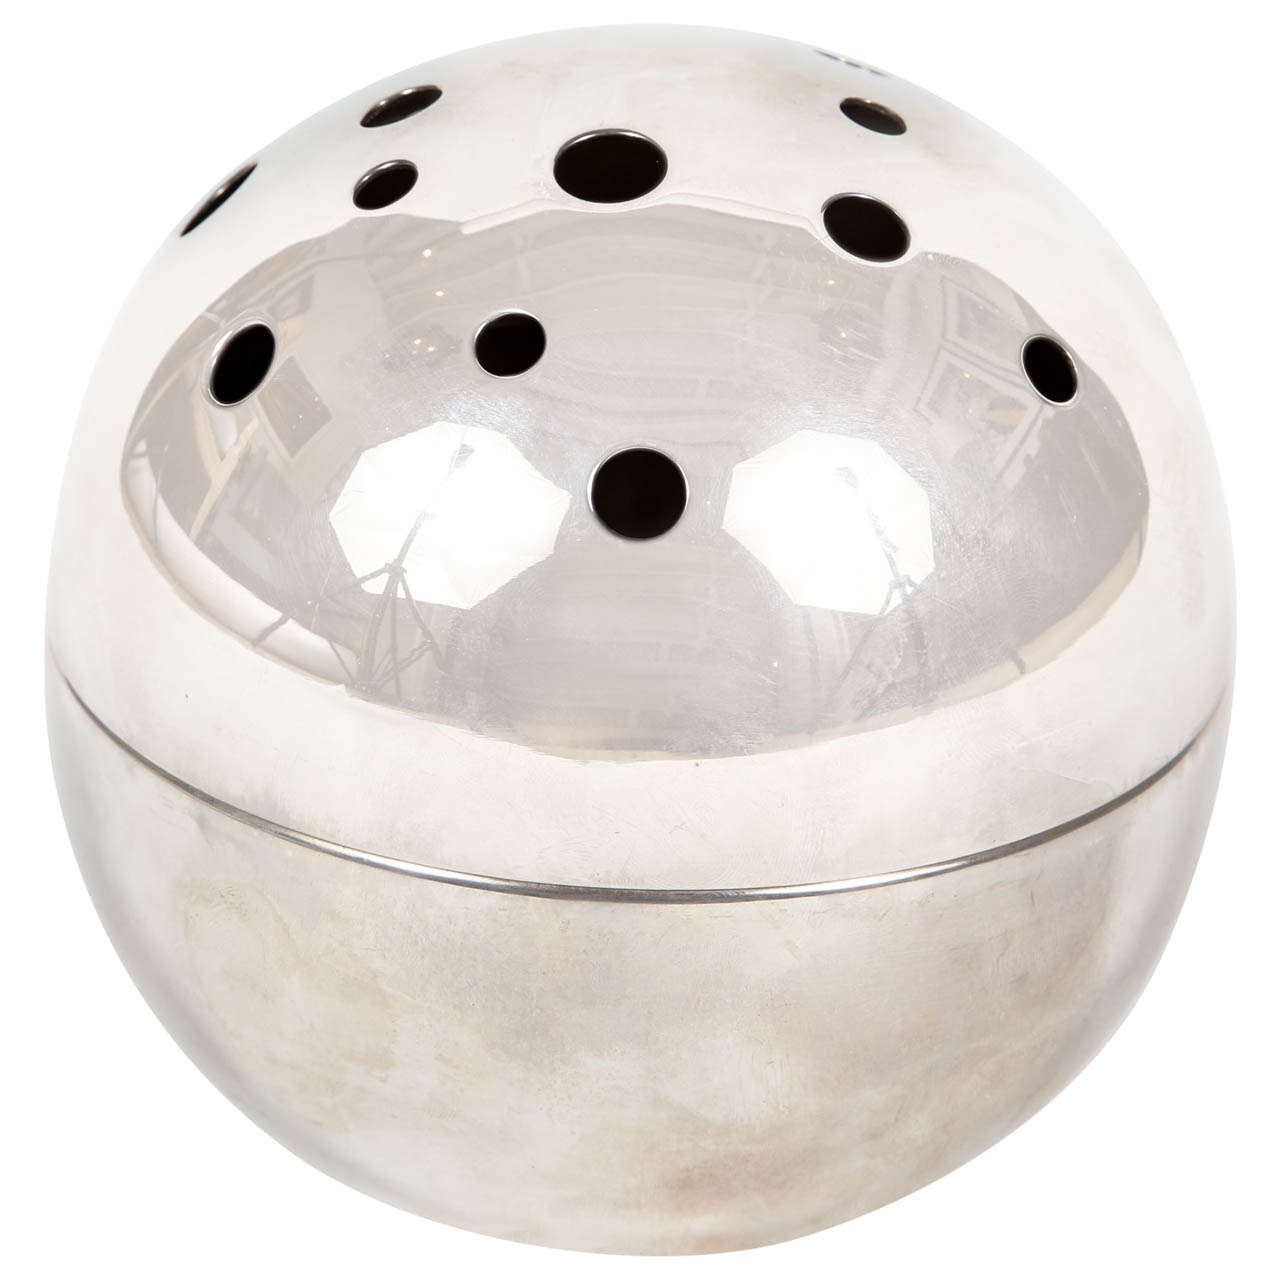 Spherical Bud Vase by Christofle of Paris